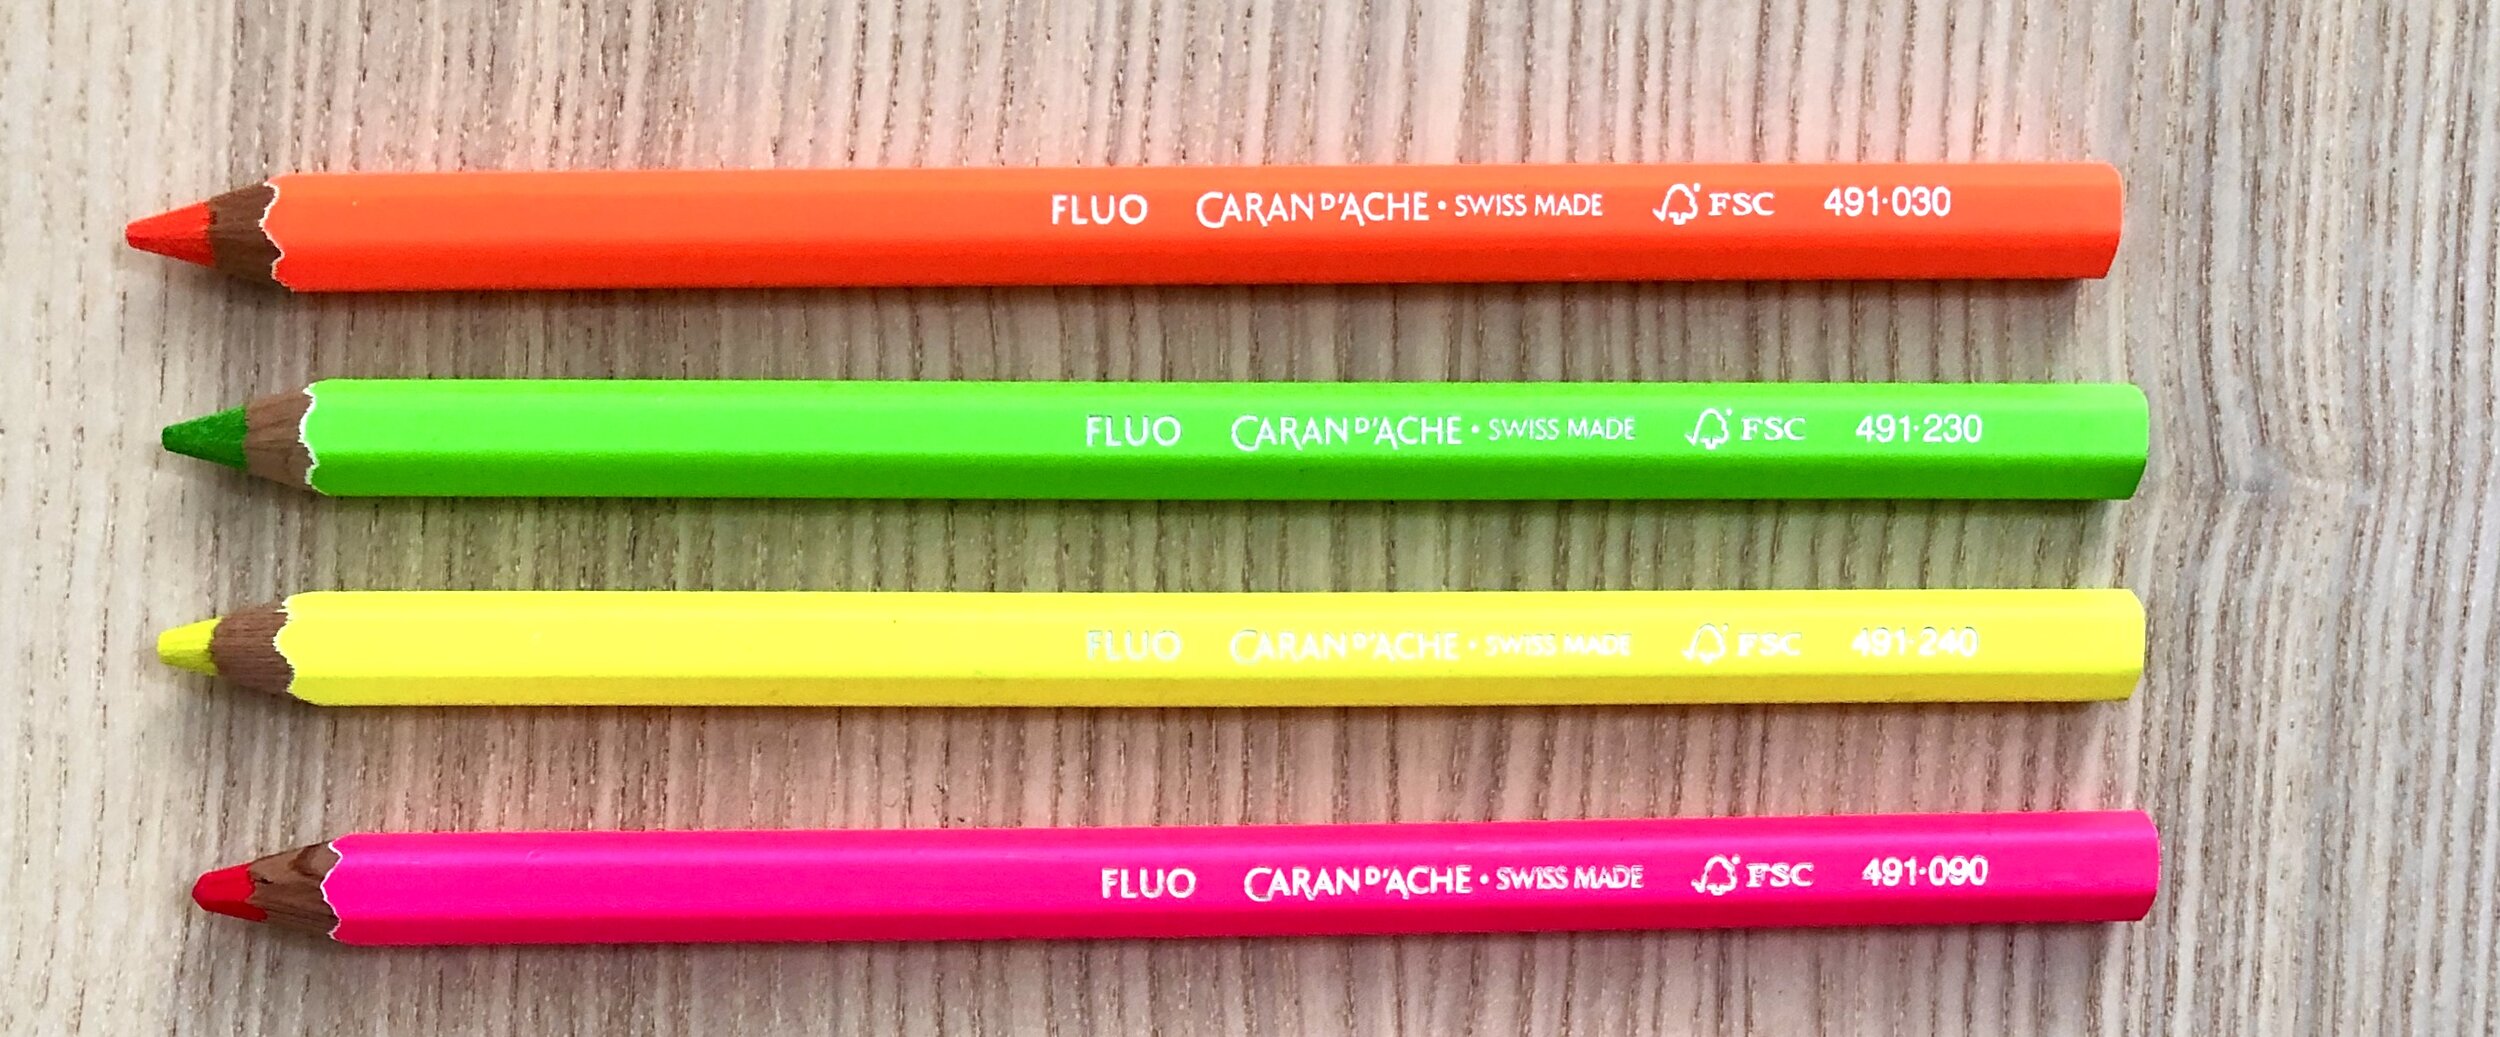 Caran D'ache 12 FANCOLOR MAXI Color Pencils #498.712